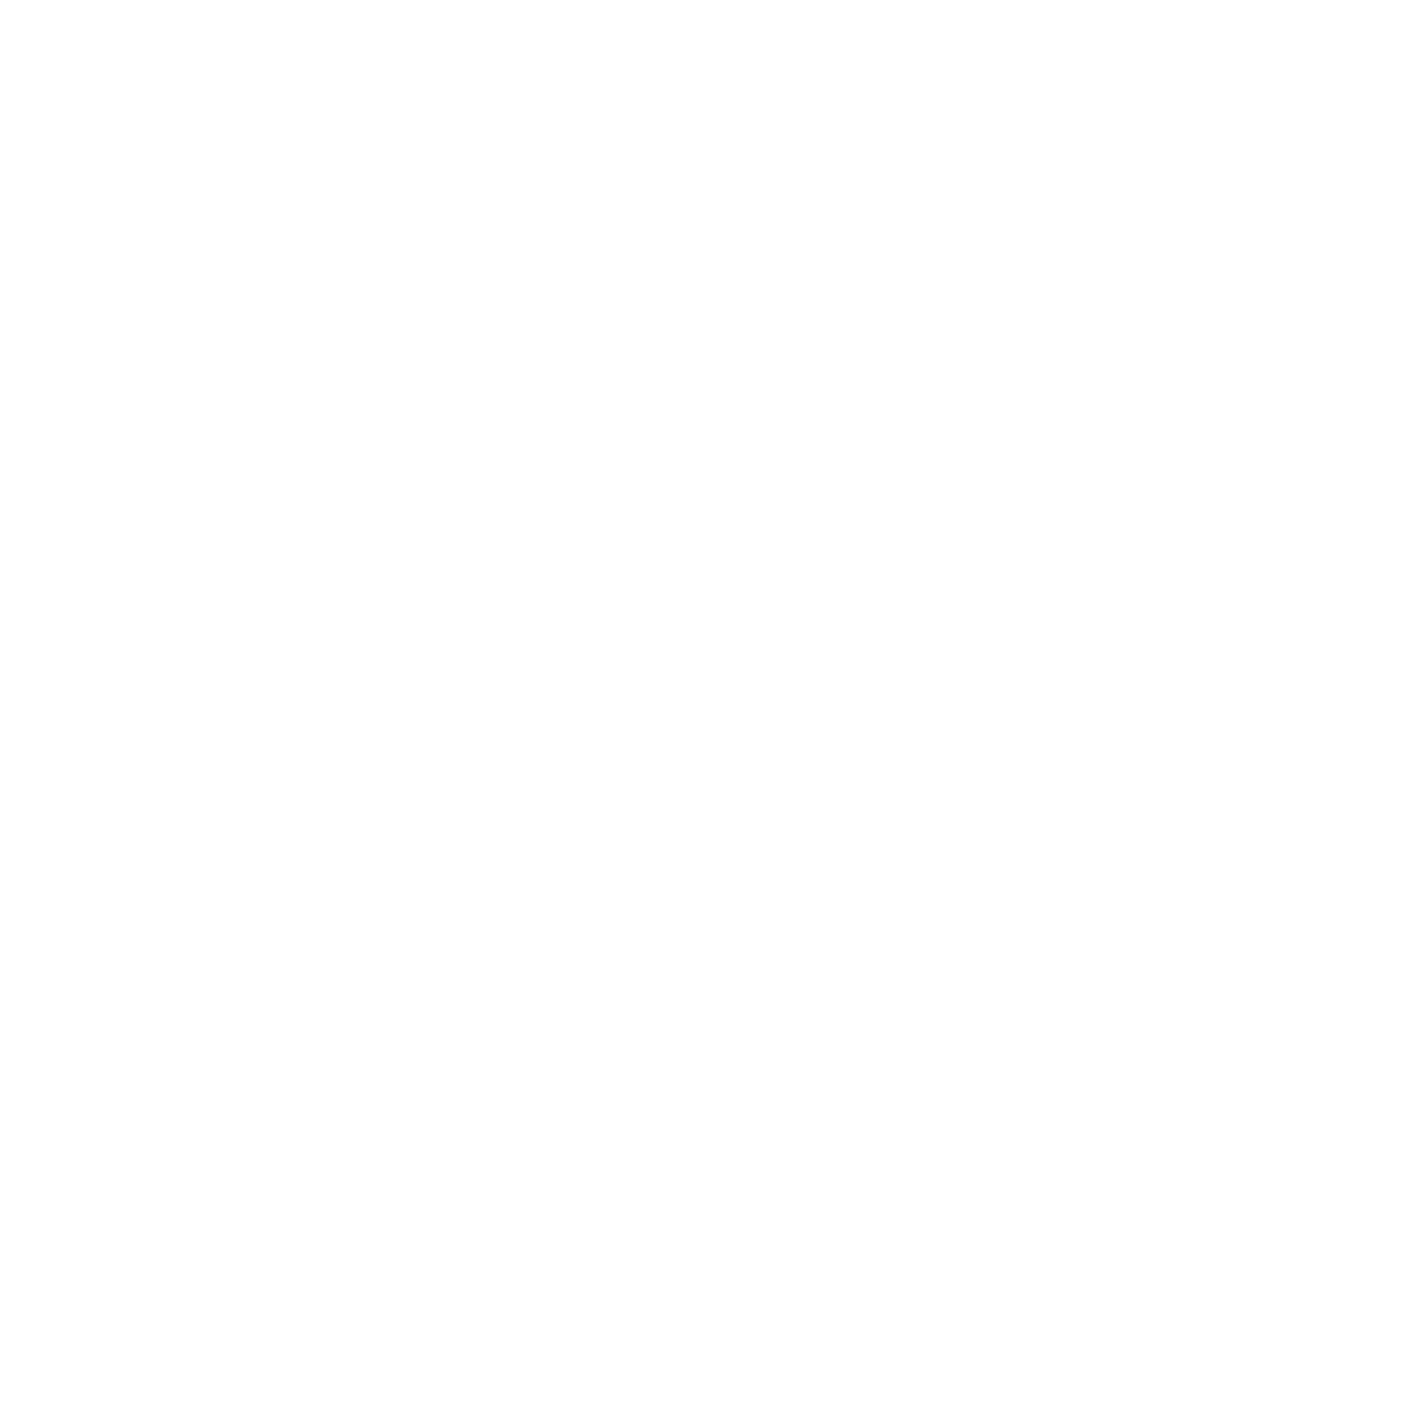 Av8 Barbers